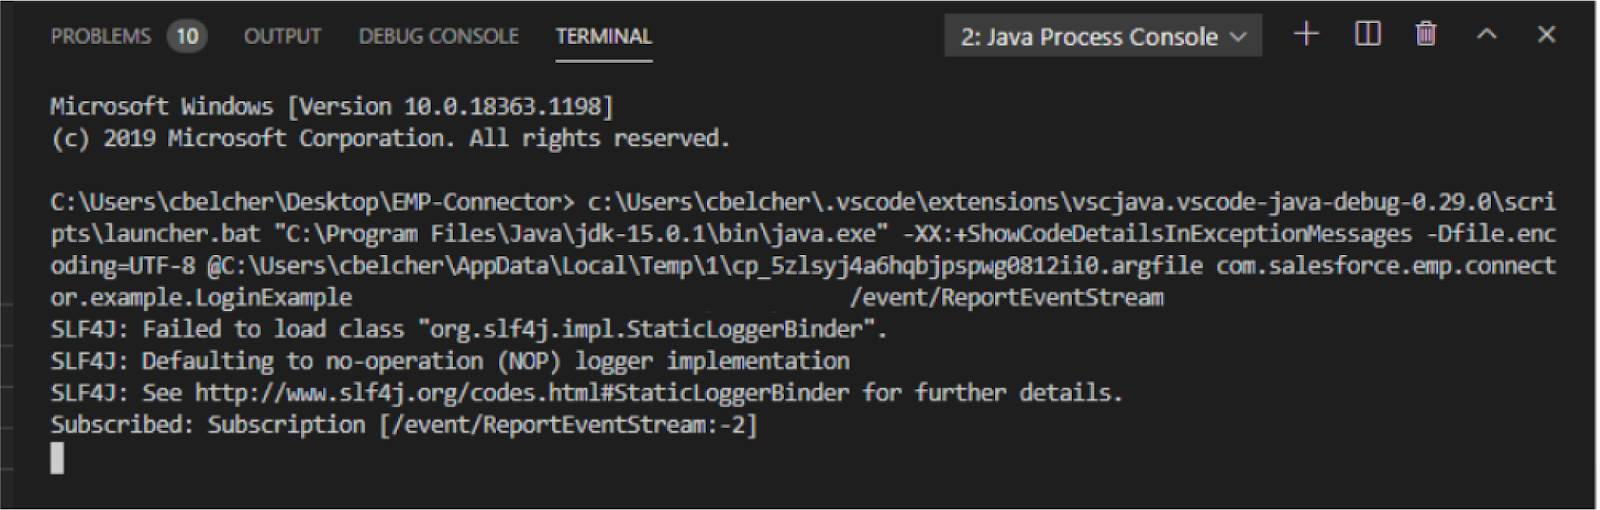 サブスクリプションに関連するコードを示す、Java Process Console のターミナルウィンドウ